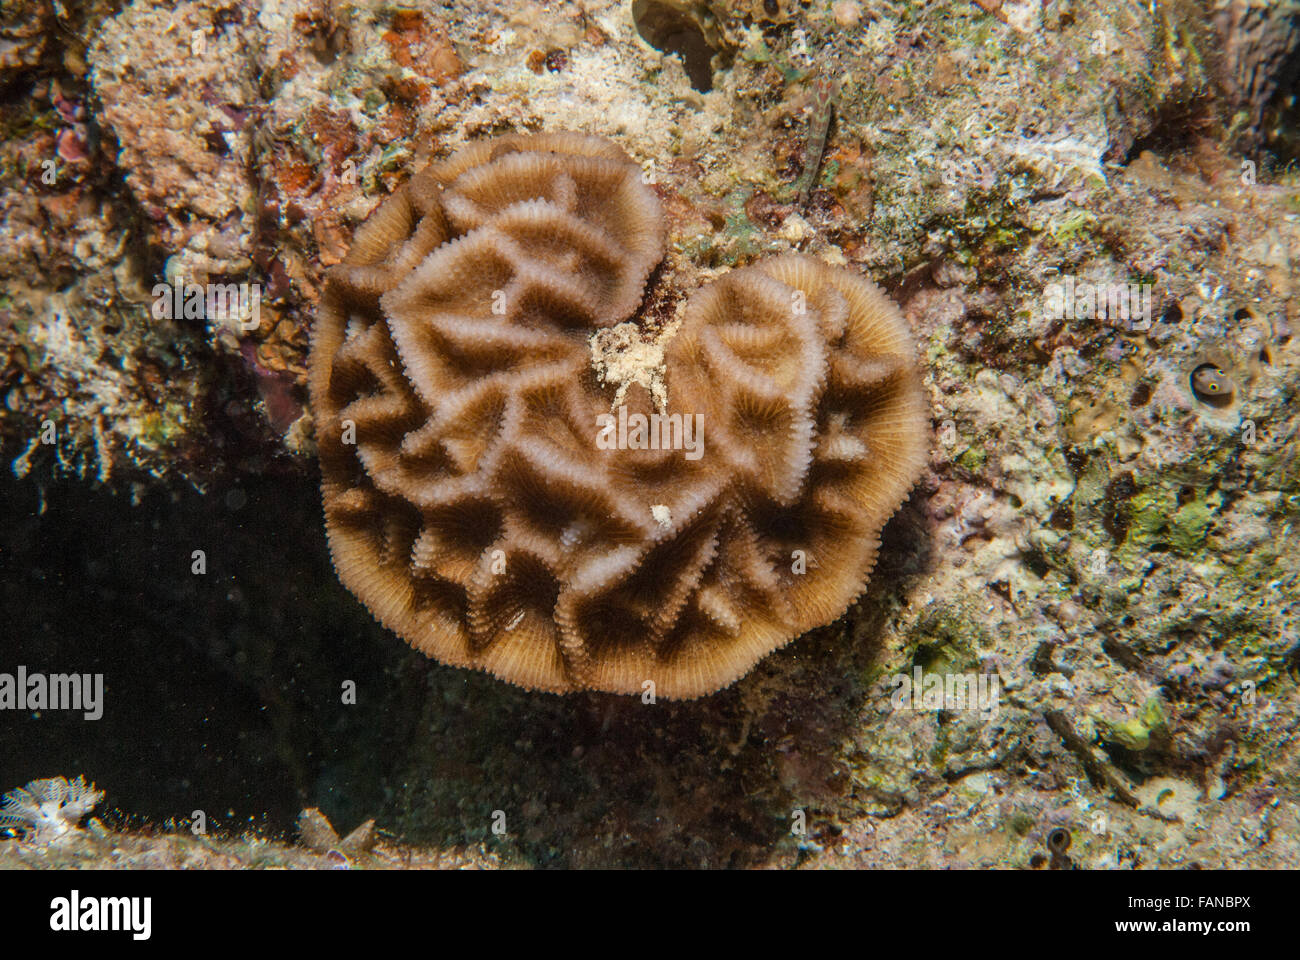 Chiuso il cervello del corallo, Goniastrea pectinata, Faviidae, Sharm el Sheikh, Mar Rosso, Egitto Foto Stock